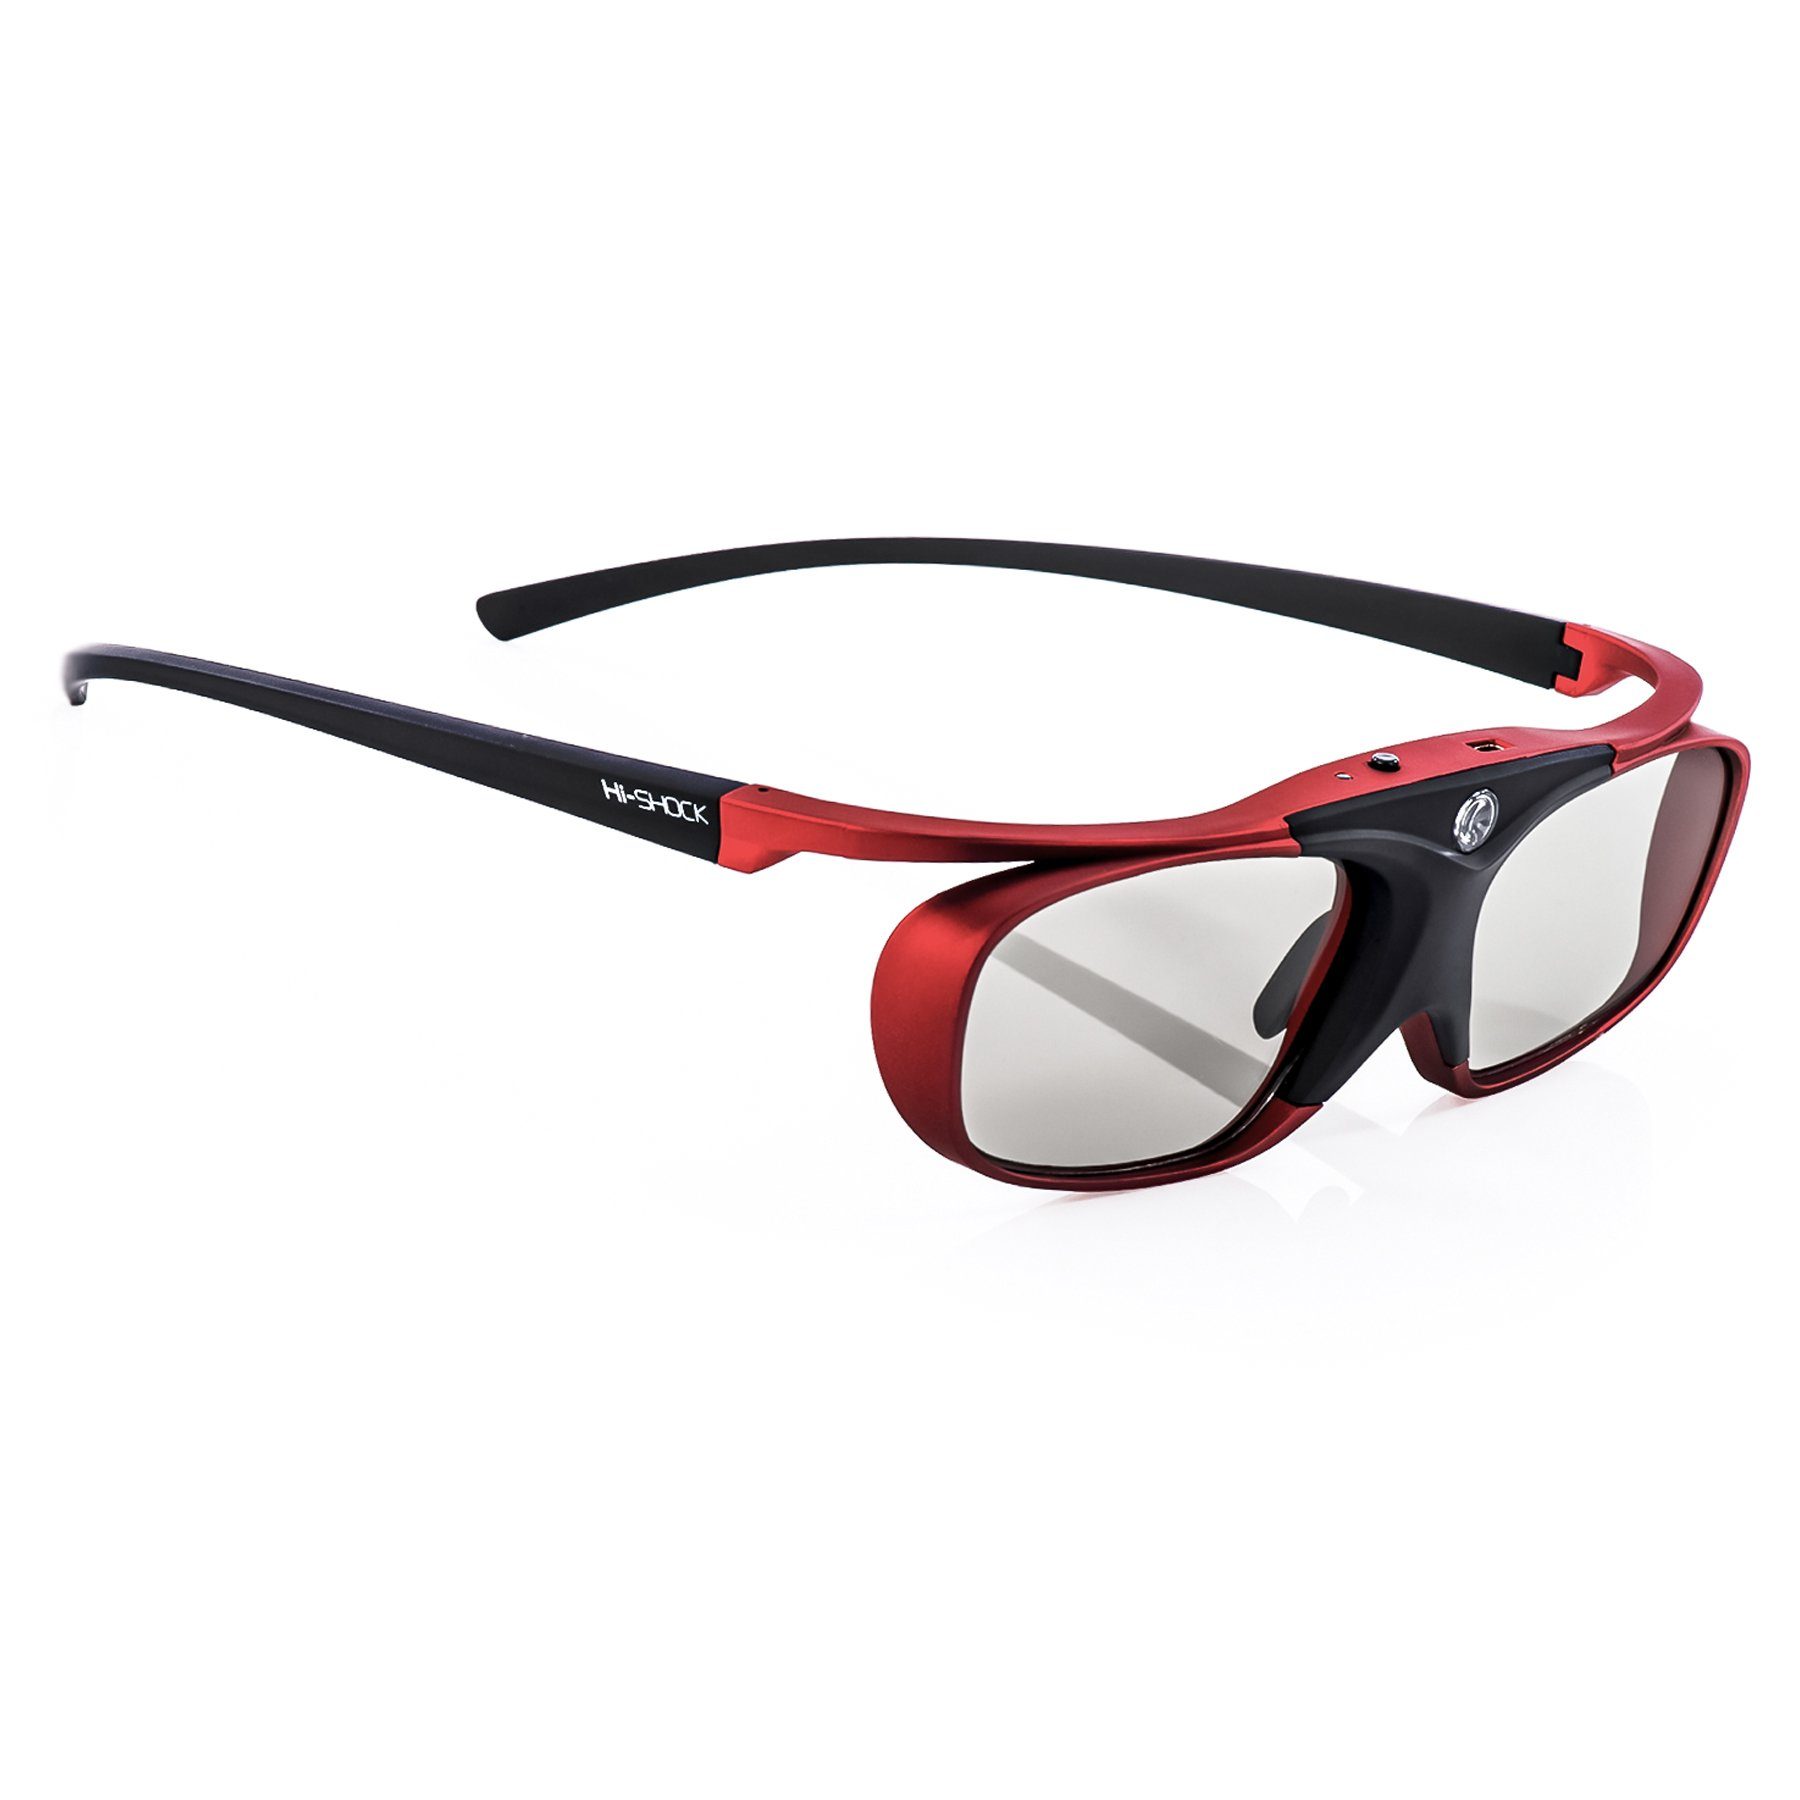 Hi-SHOCK 3D-Brille Scarlet Heaven, für RF 3D Beamer von Sony & Epson oder Bluetooth / RF 3D TVs